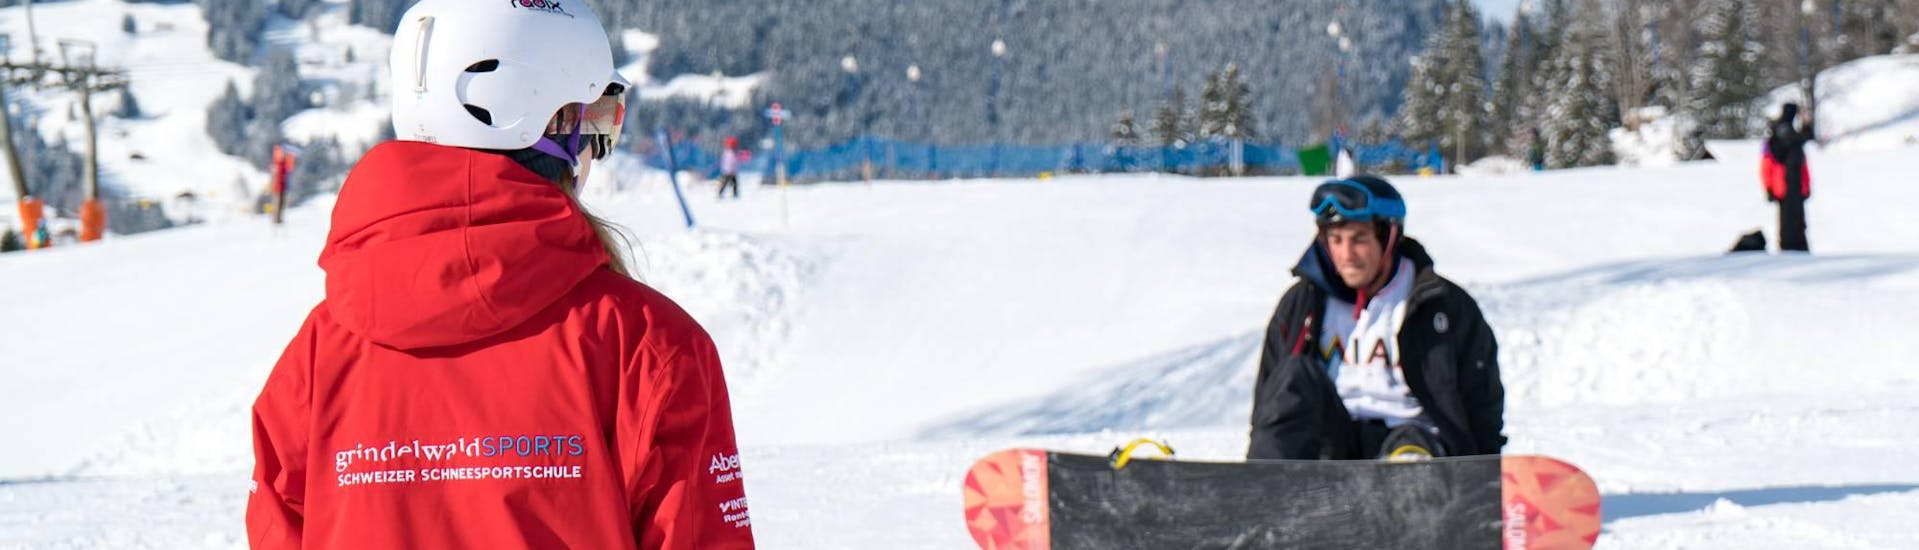 Eine Snowboardlehrerin zeigt einem Teilnehmer wie man richtig aufsteht beim Snowboardkurs + Snowboardverleih Package für Erwachsene für Anfänger mit der Swiss Ski School Grindelwald.